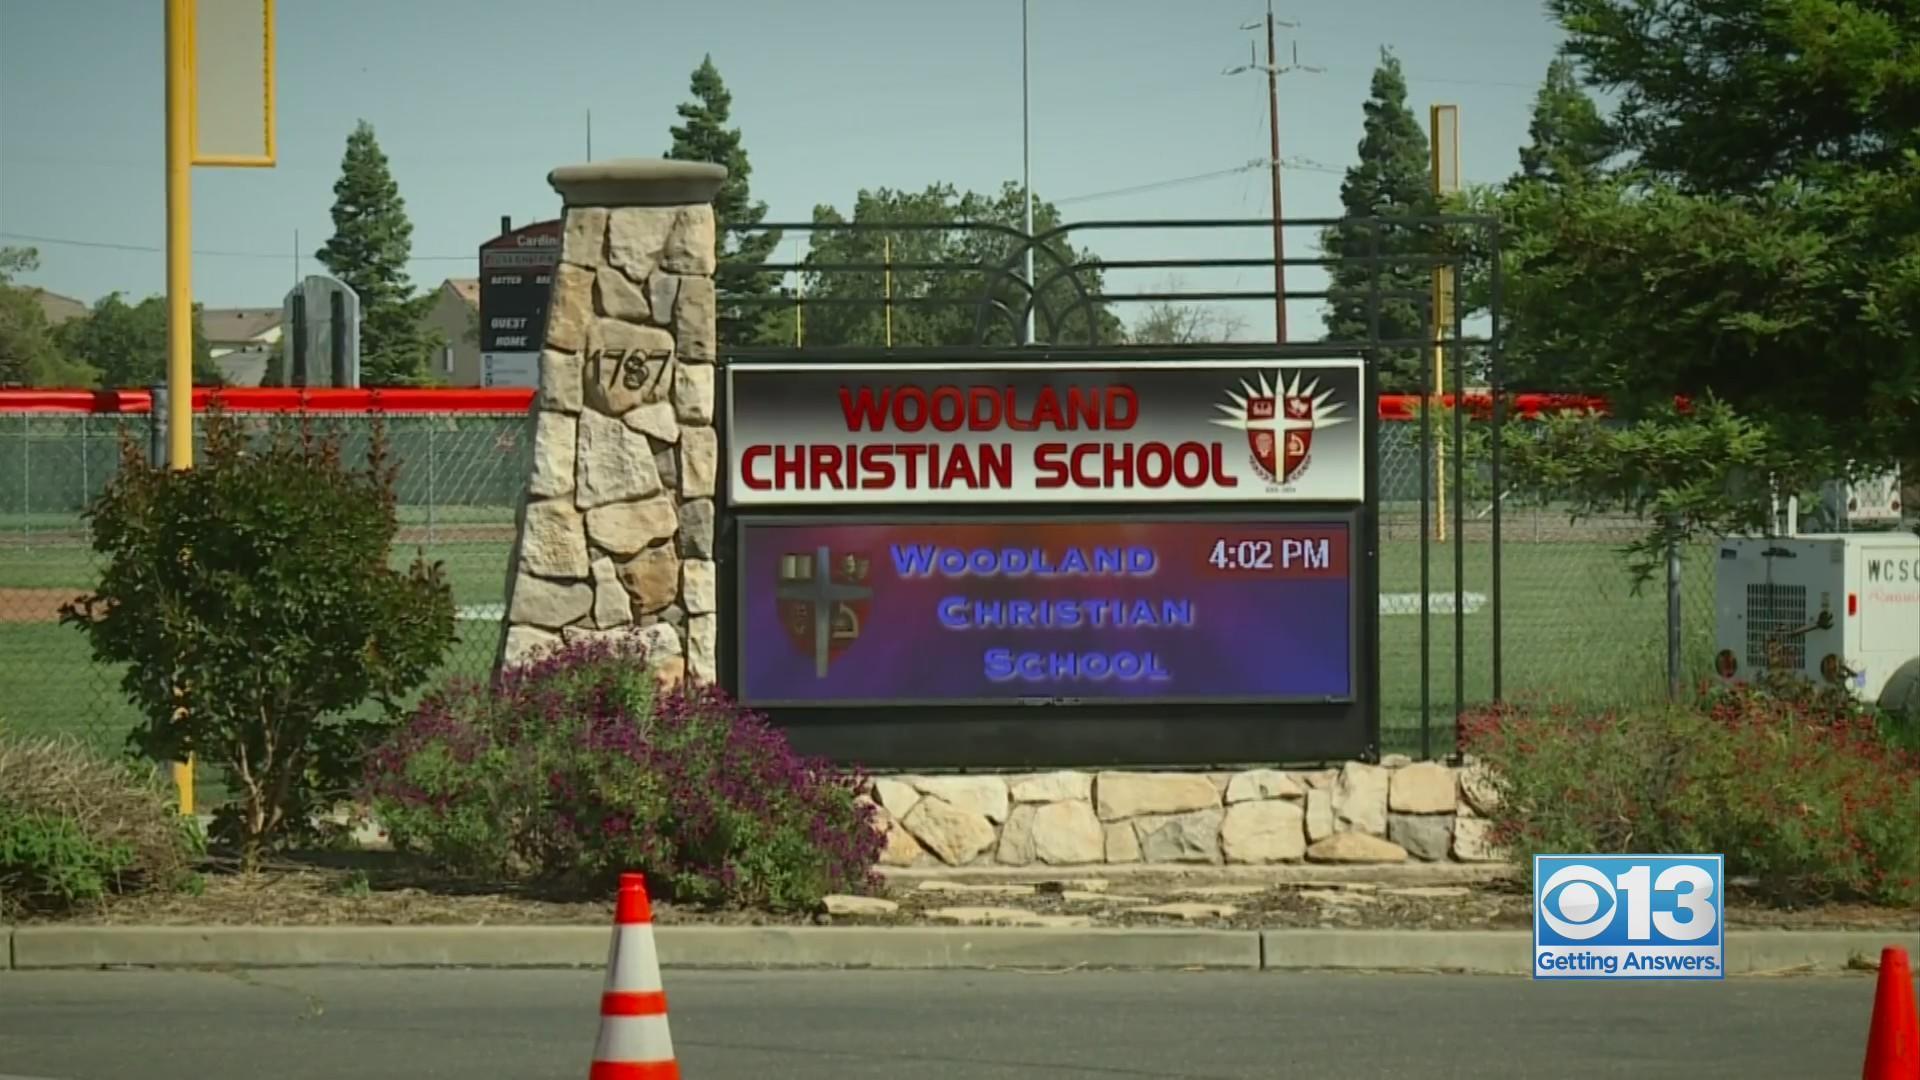 Schoolstudentssexvideos - Sex scandal investigation underway at Woodland school - CBS Sacramento